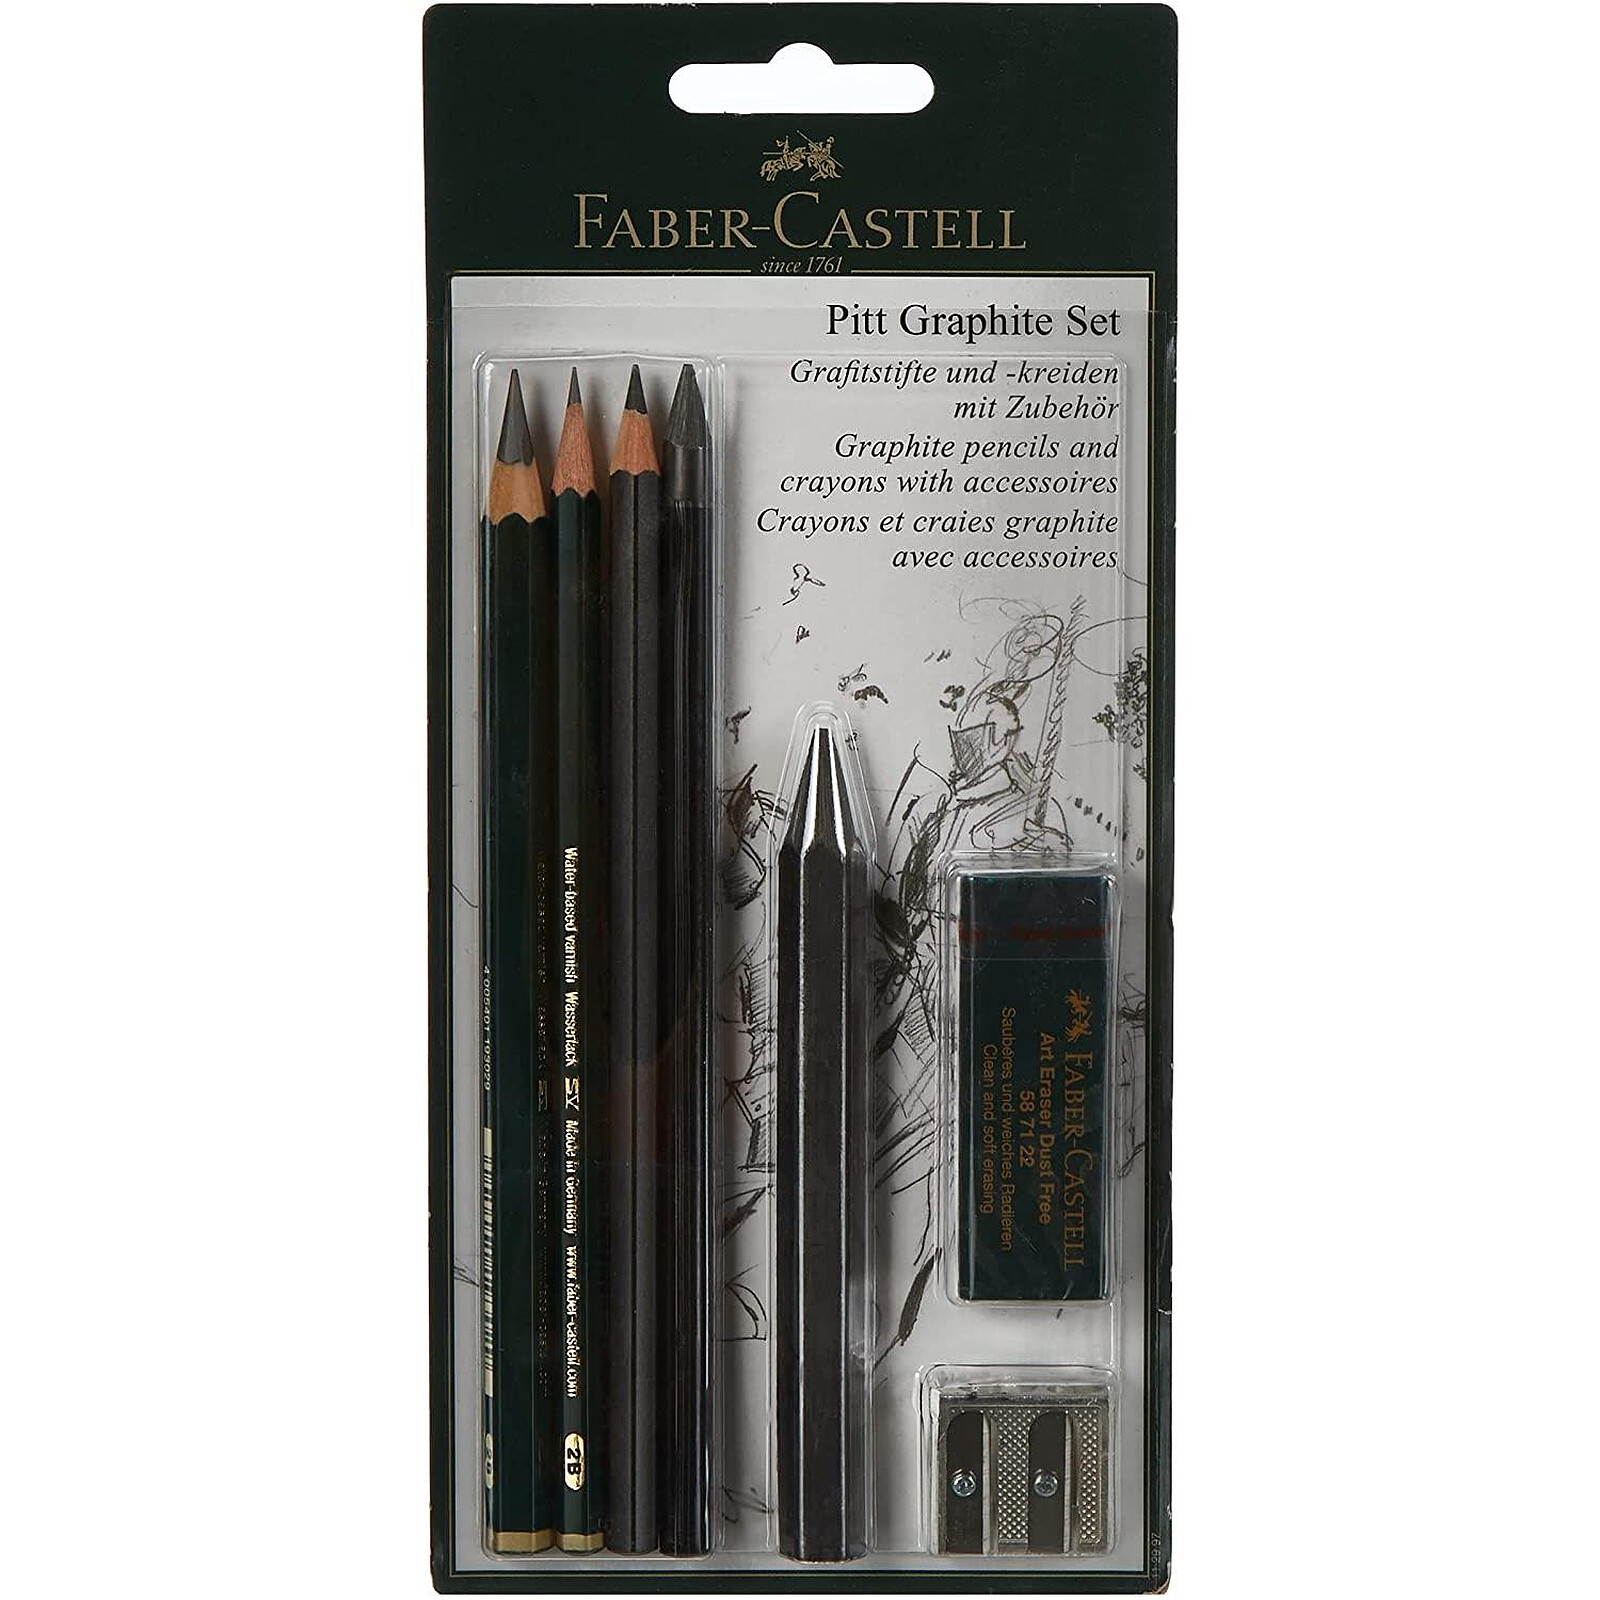 Crayon graphite HB avec gomme x120 - Crayon & porte-mine - LDLC